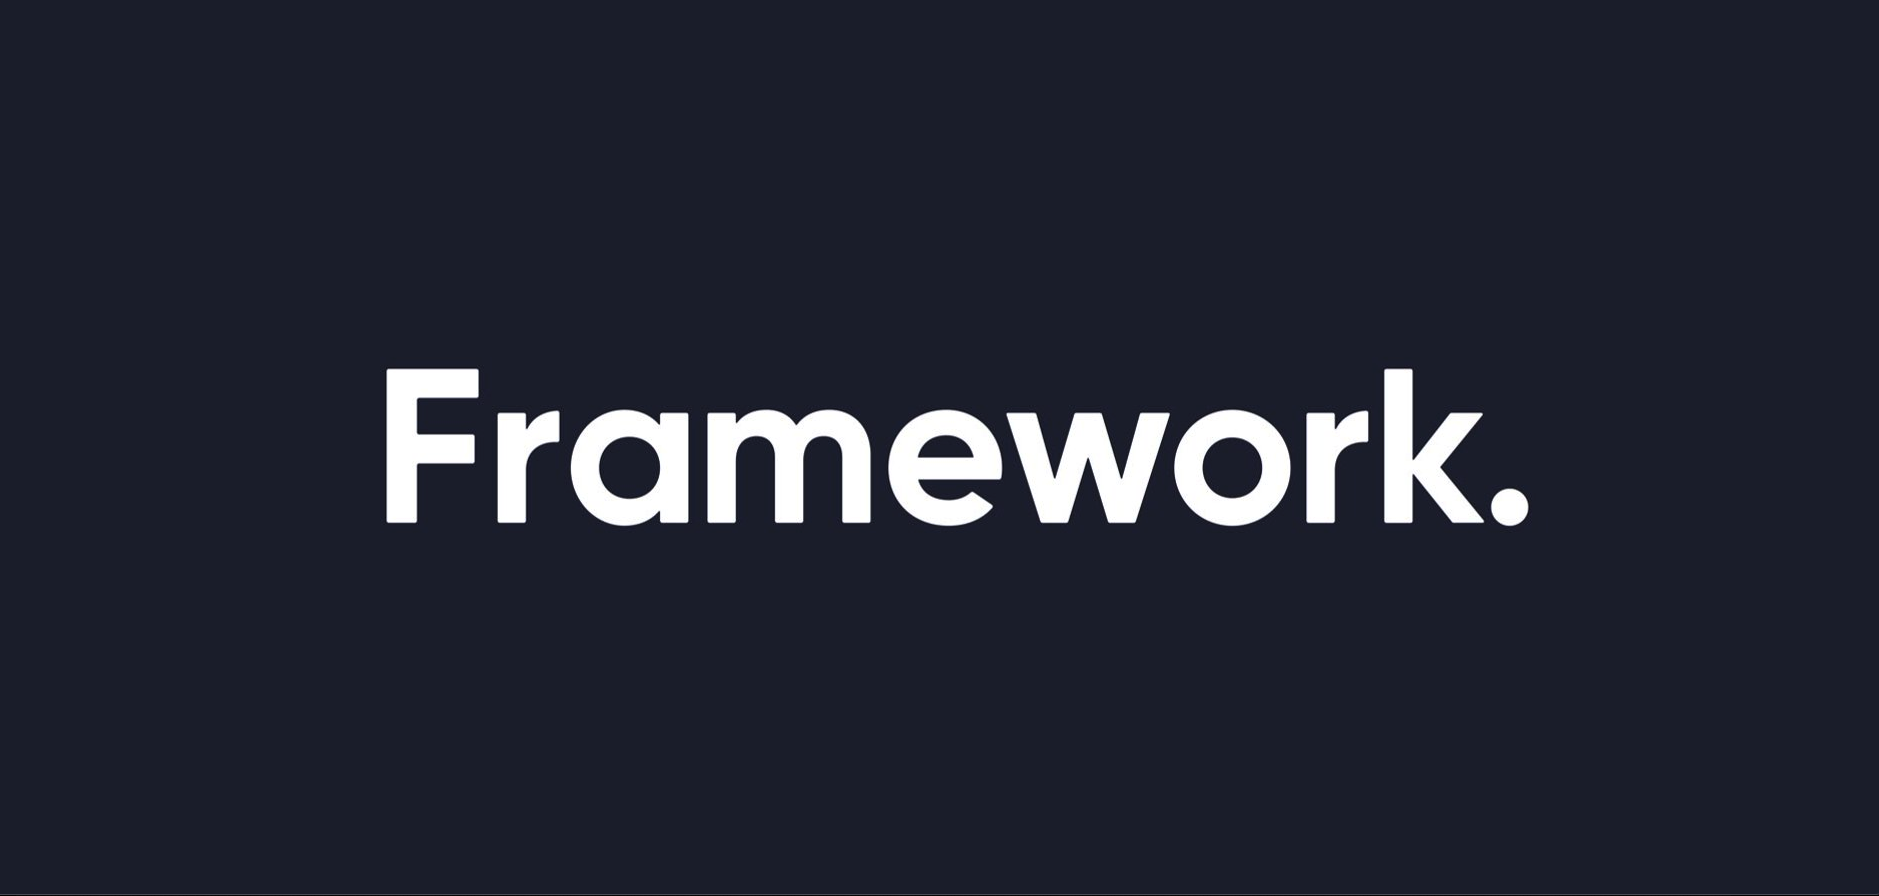 Framework digital. Дизайн-фреймворк. Wasaby фреймворк лого. .Net Compact Framework logo. Warp 7 Framework logo.